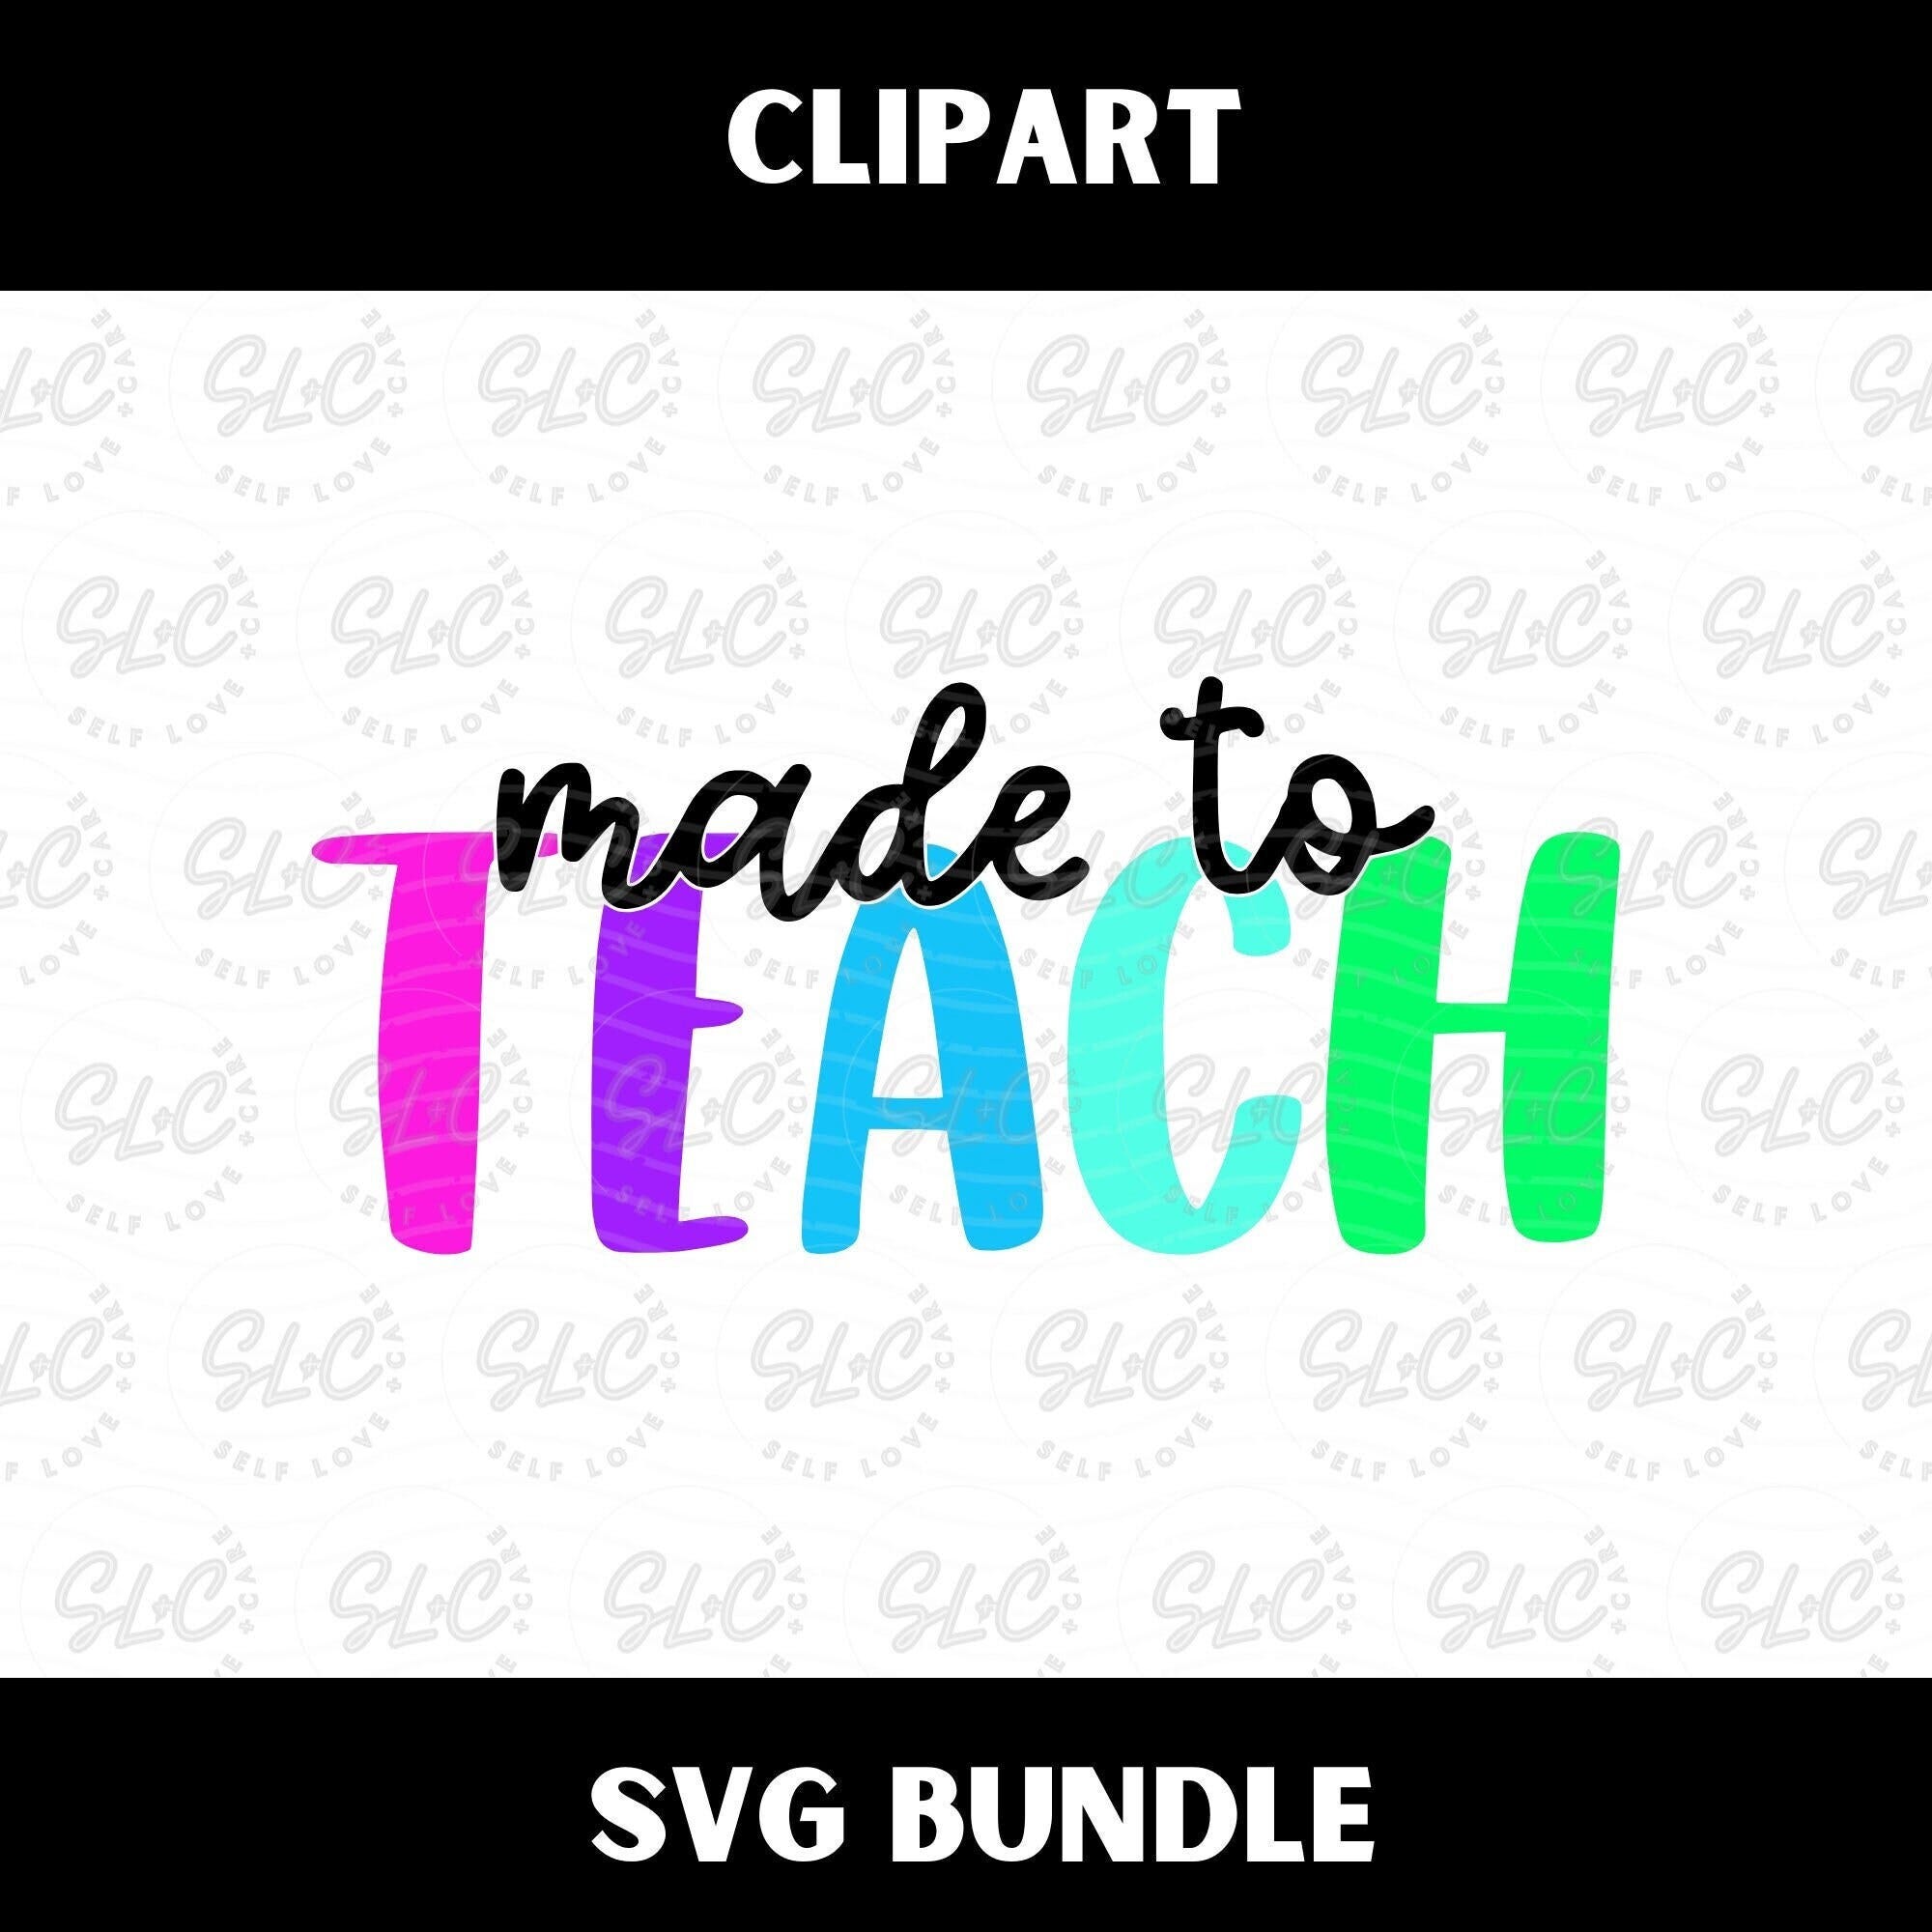 Svg bundle, Teacher Svg, Teacher Sublimation, Teacher Appreciation, Back to School, Teacher Gift, Teacher Shirt Svg, Cricut Cut File